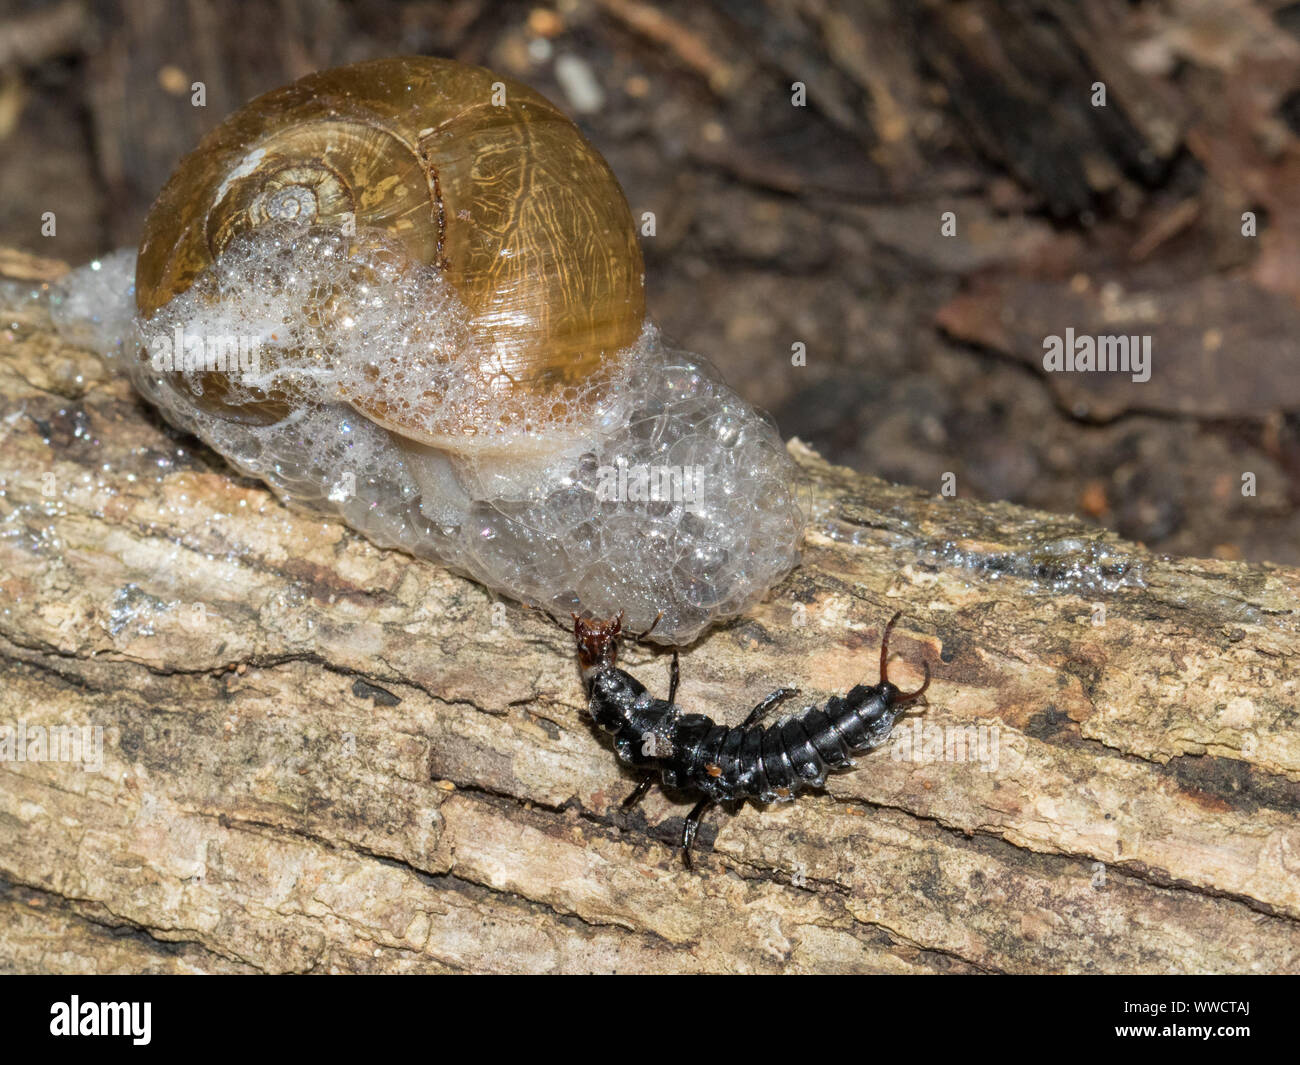 Una larva del escarabajo de tierra atacando a un caracol. Foto de stock